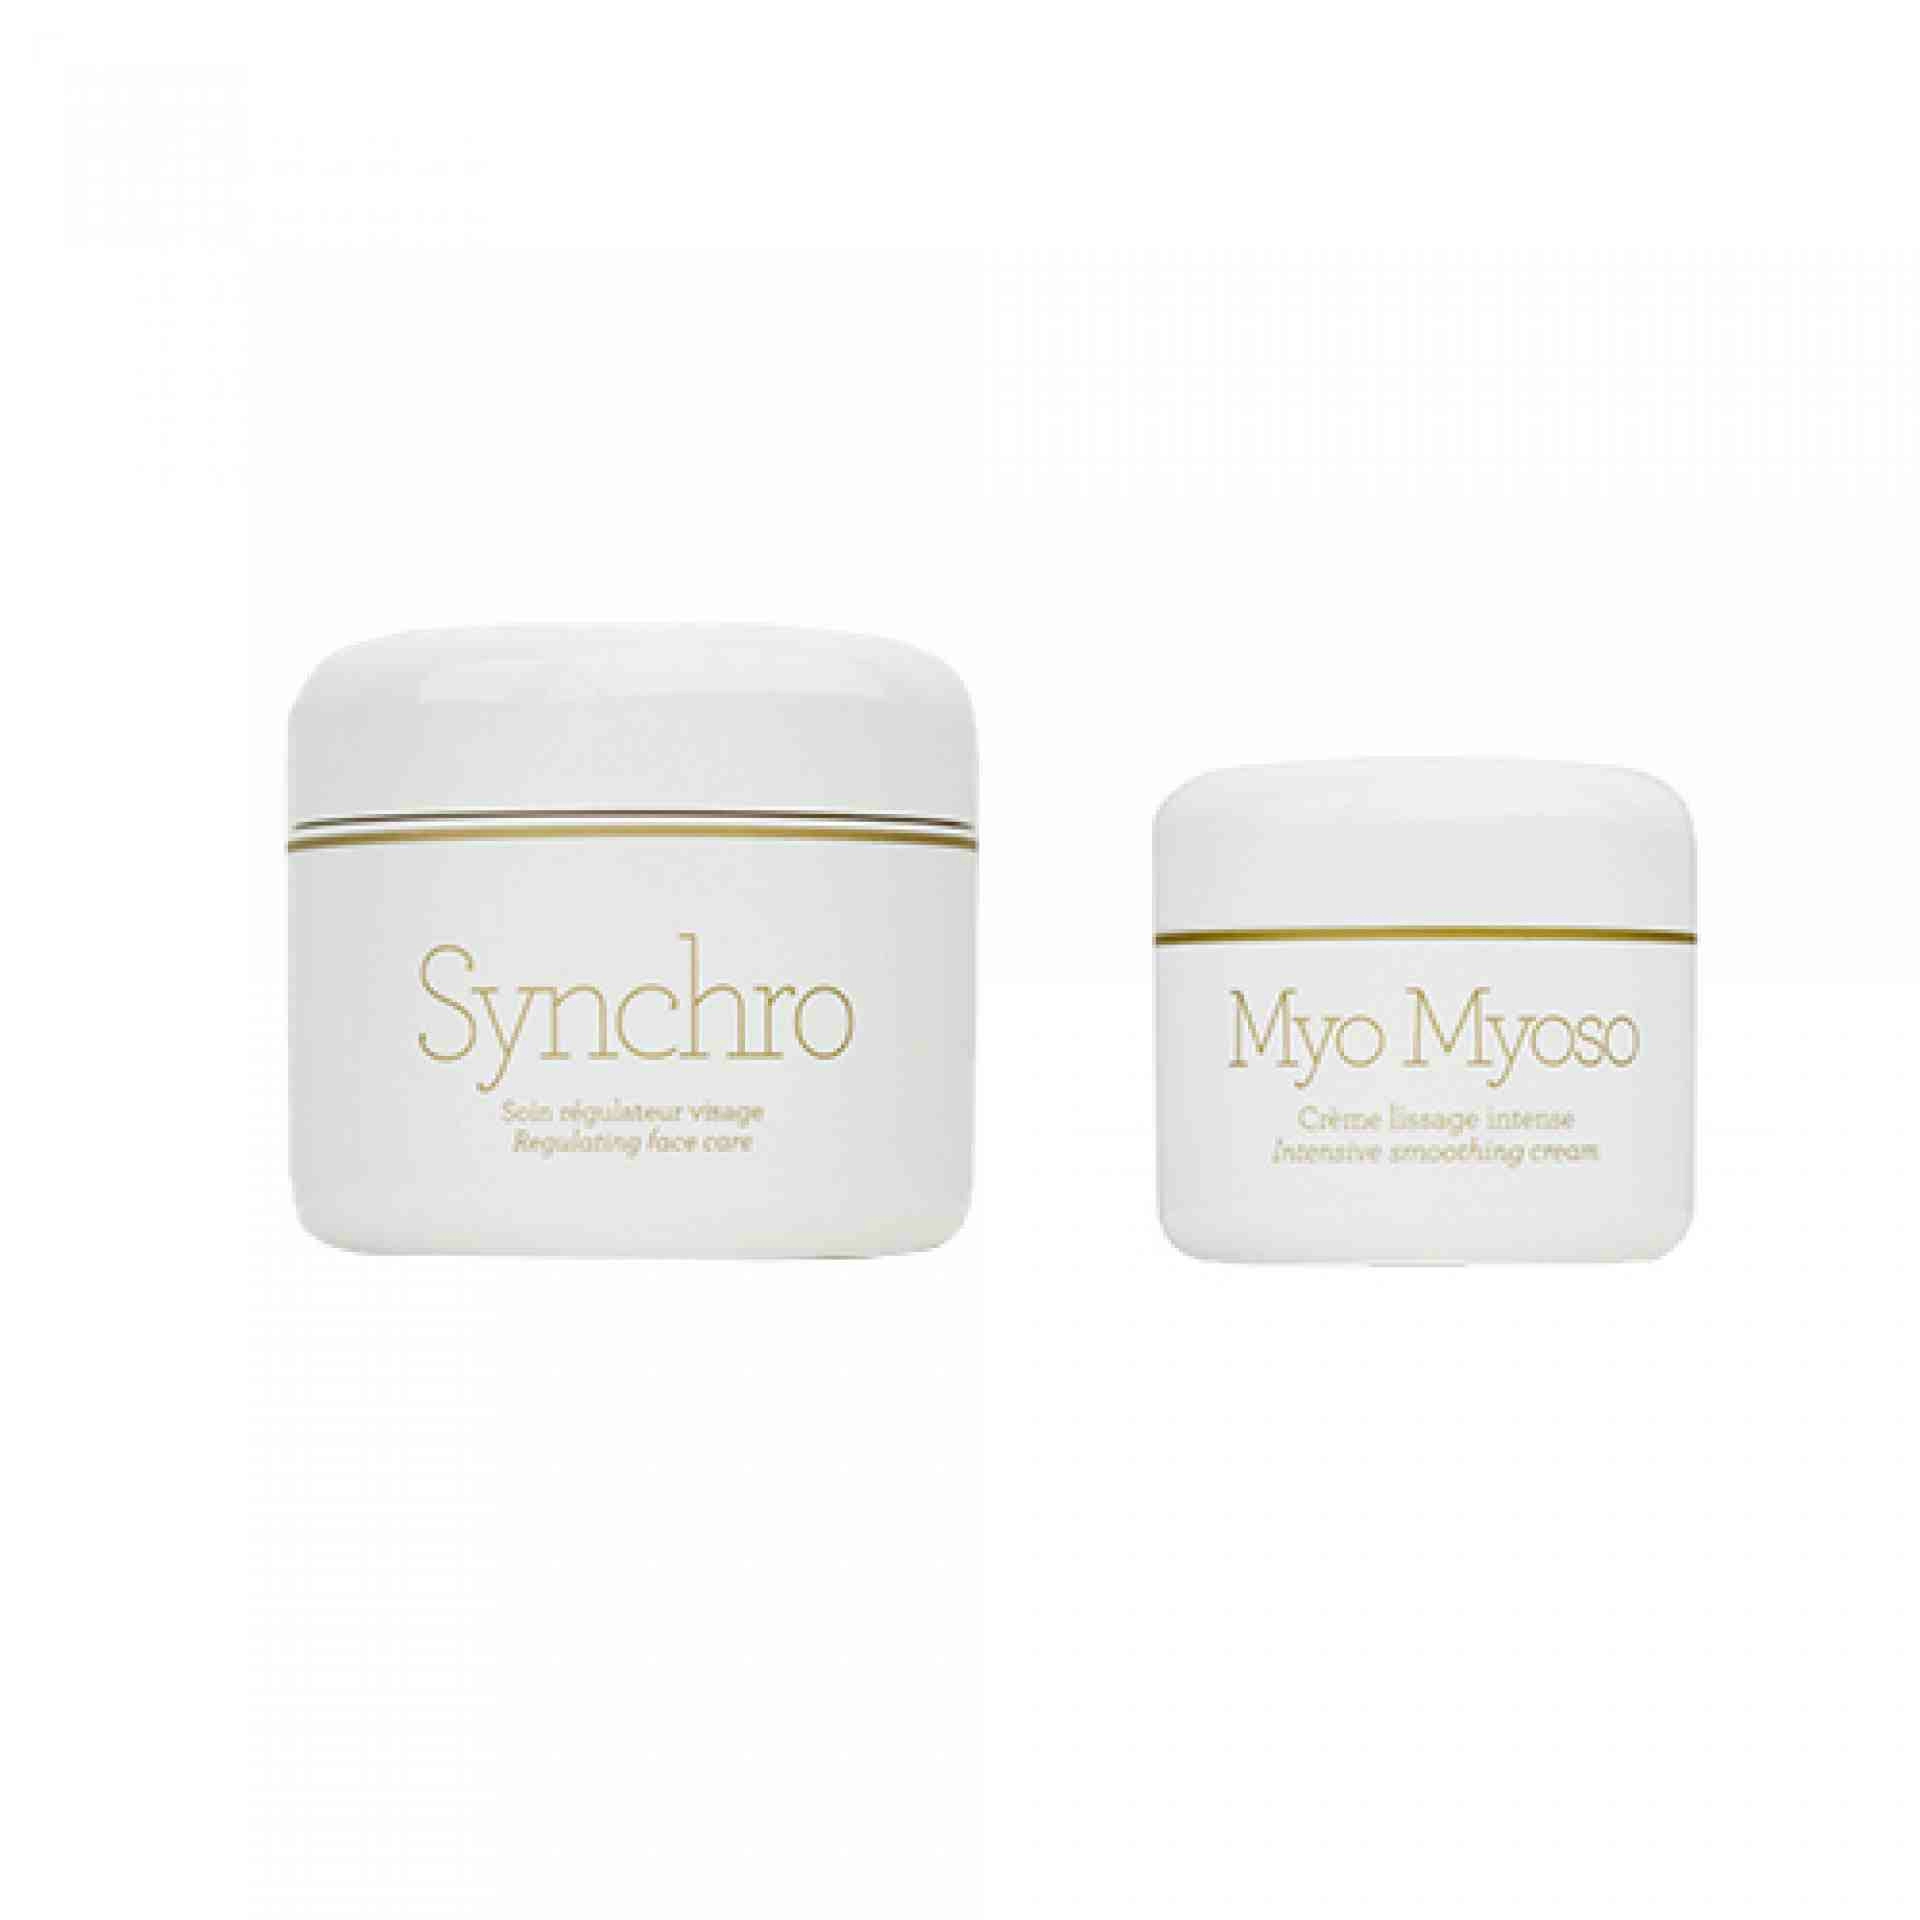 Pack Synchro 50ml + Myo Myoso 30ml | Anti-envejecimiento - Gernétic ®